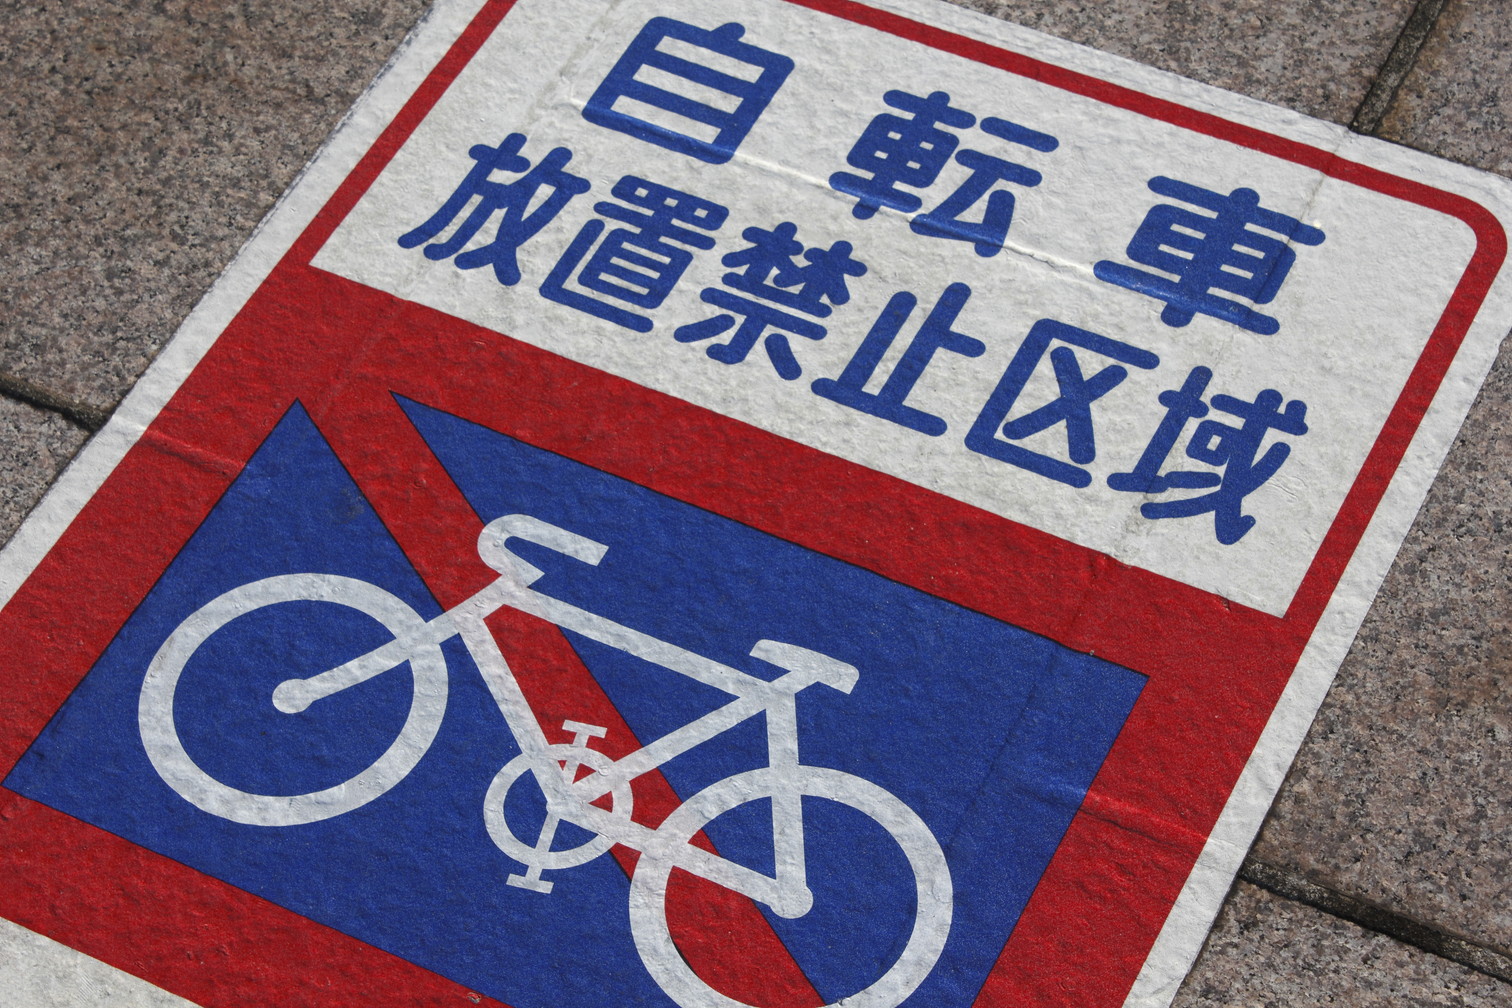 放置自転車対策のための自転車放置禁止区域